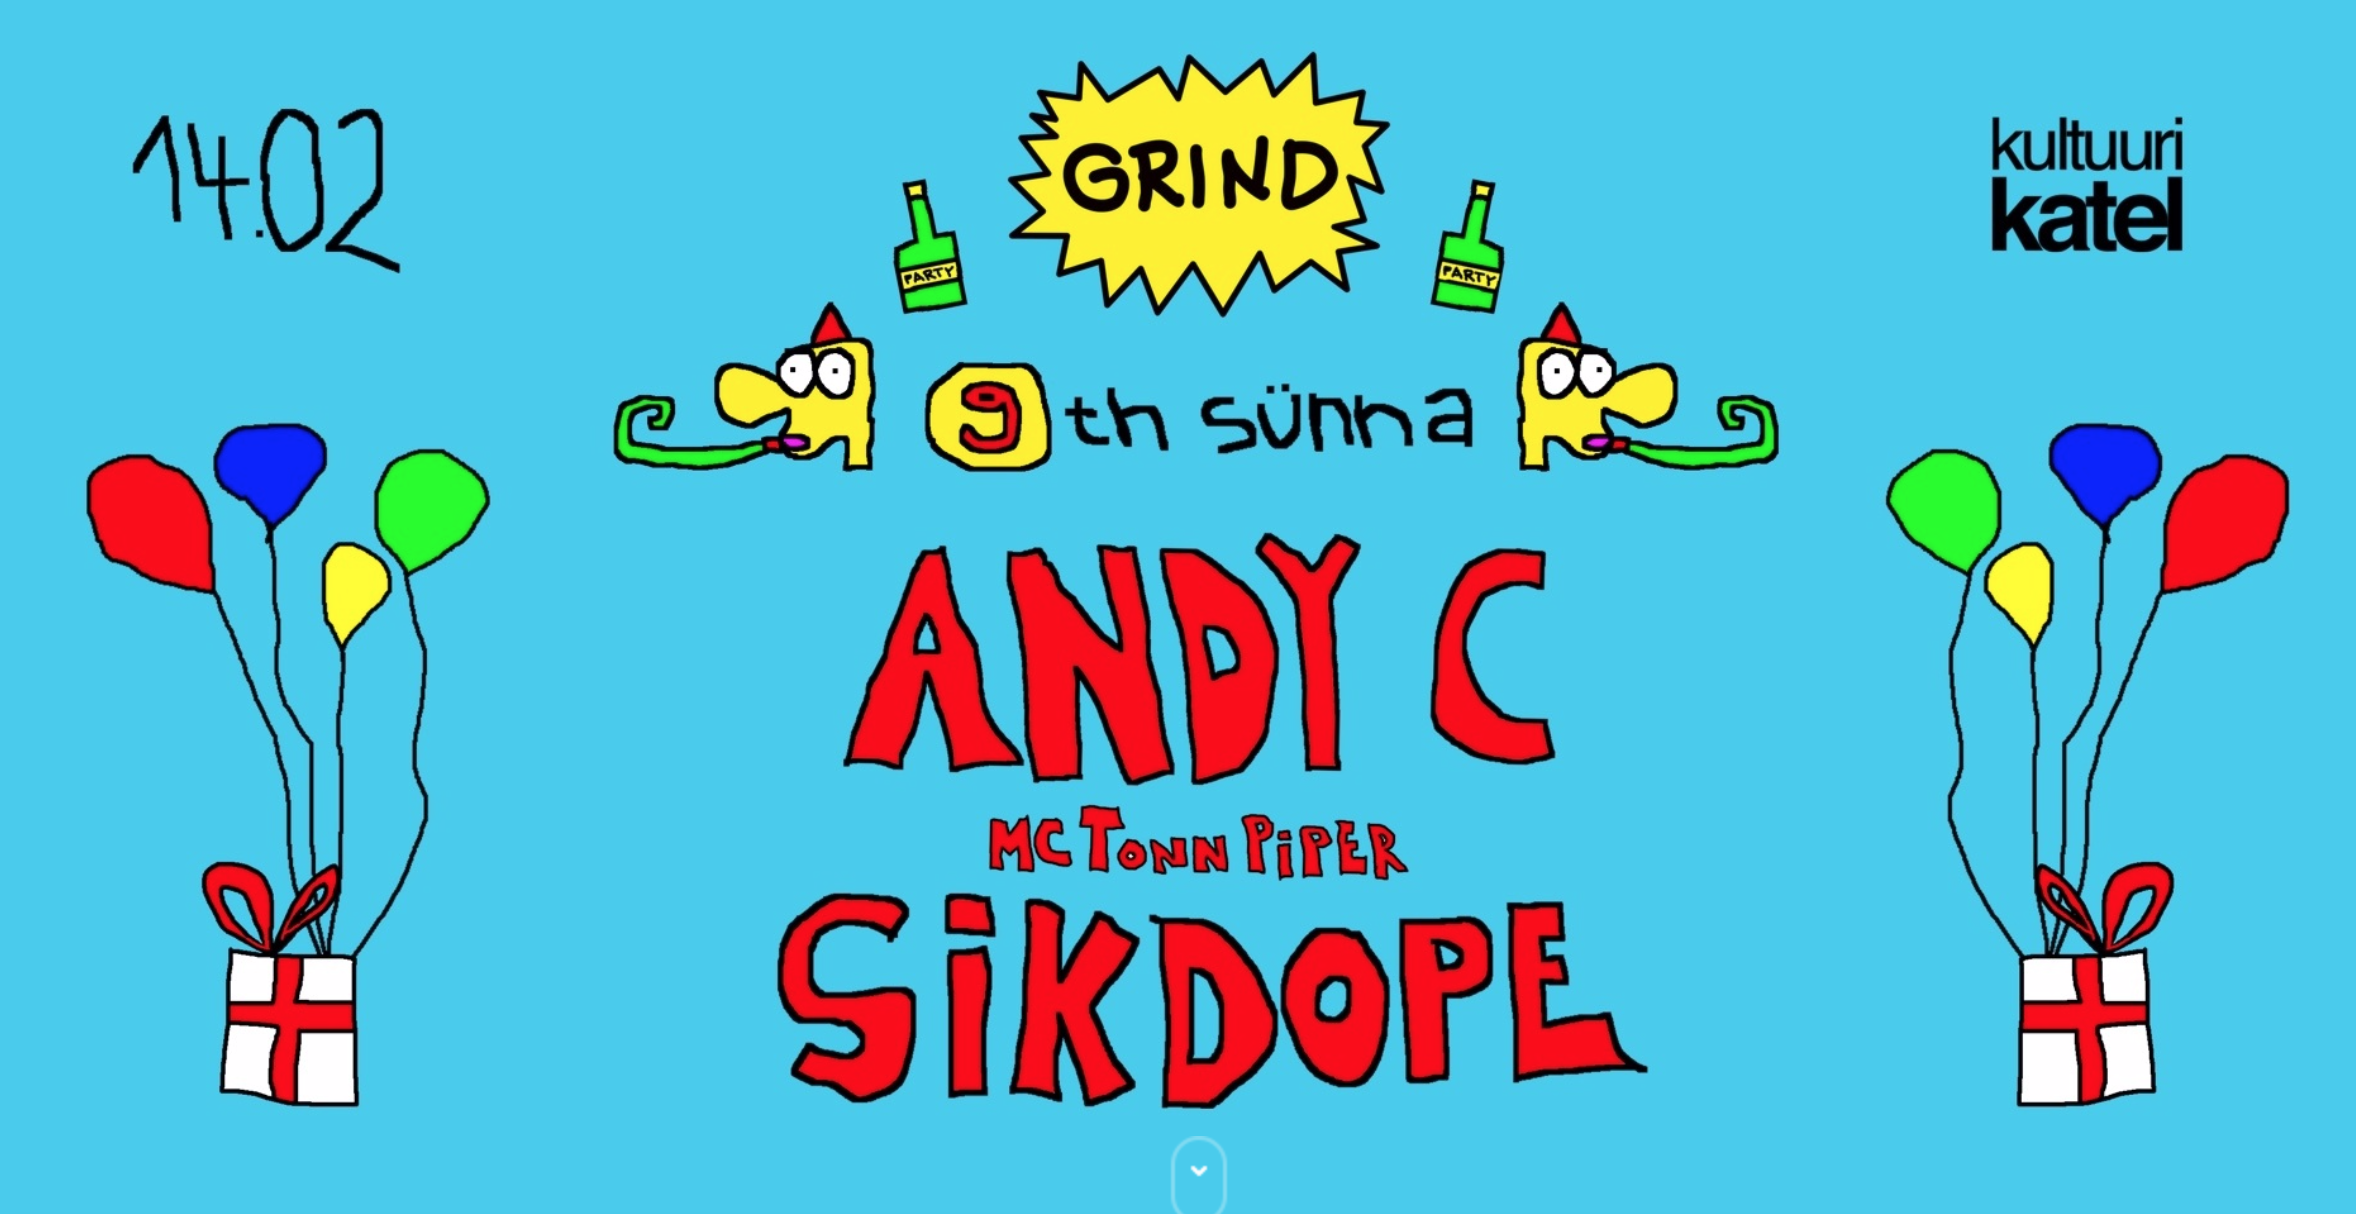 12648GRIND ESITLEB: ANDY C & SIKDOPE